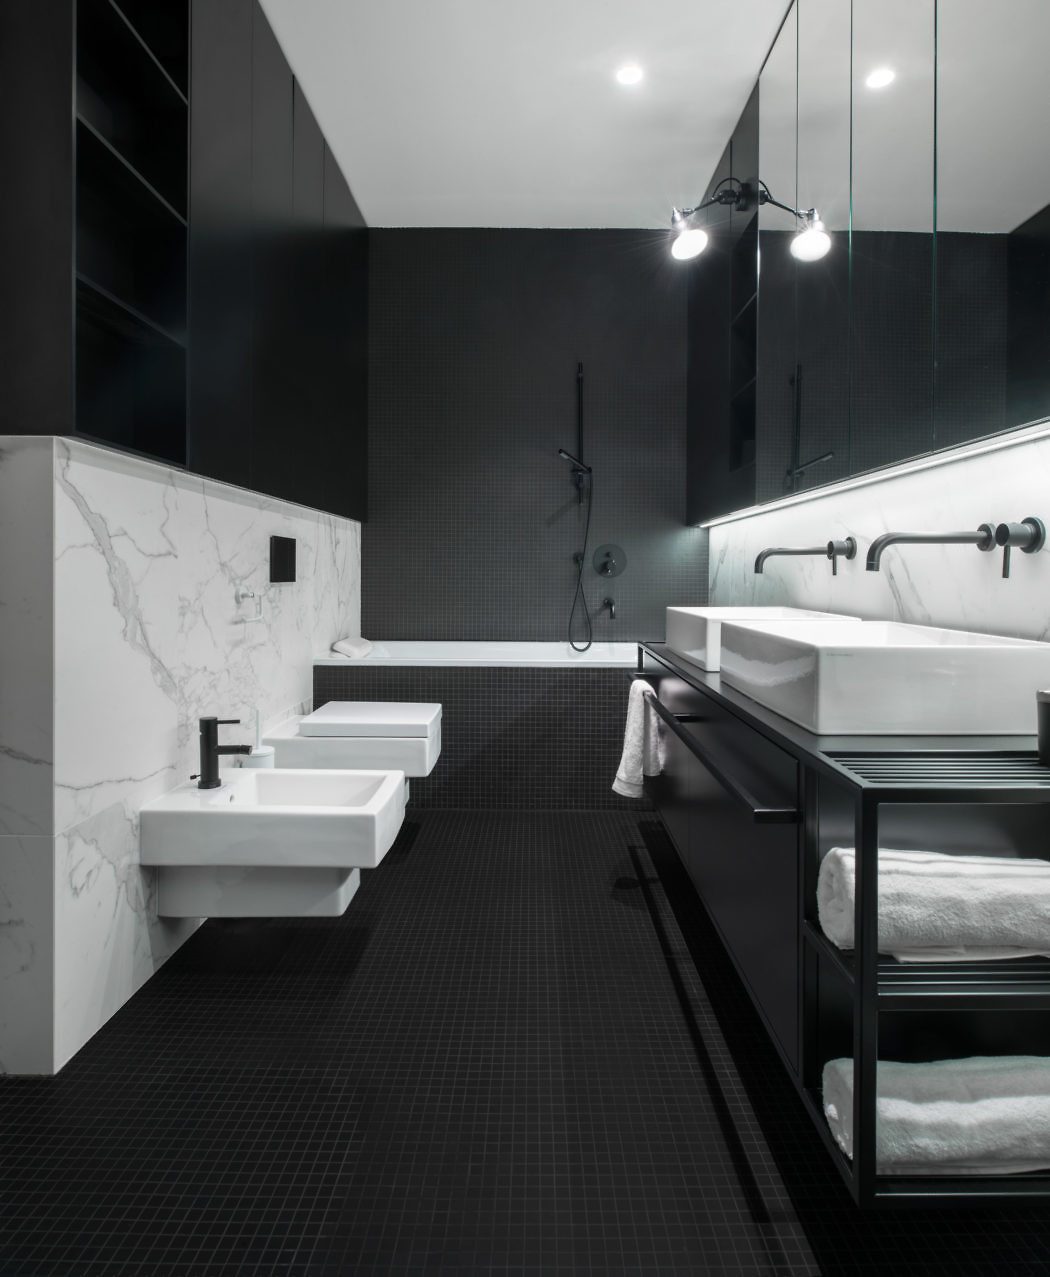 suiker tweede Passief Luxe moderne badkamer in zwart wit - Badkamers voorbeelden